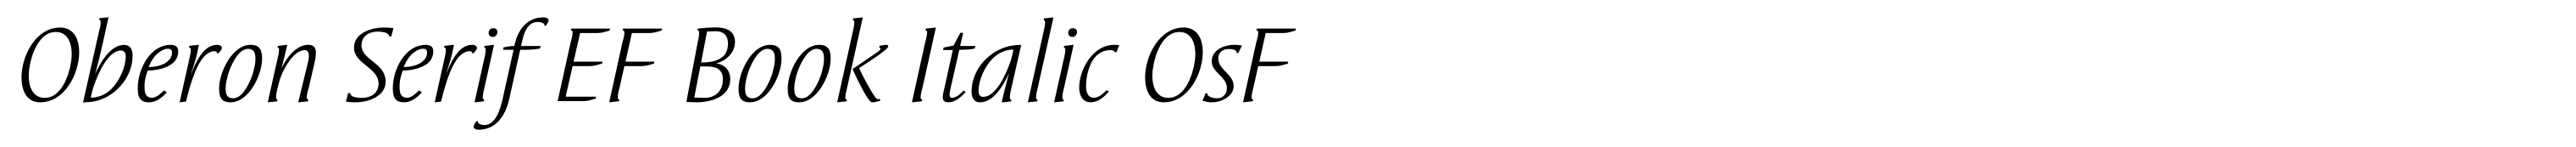 Oberon Serif EF Book Italic OsF